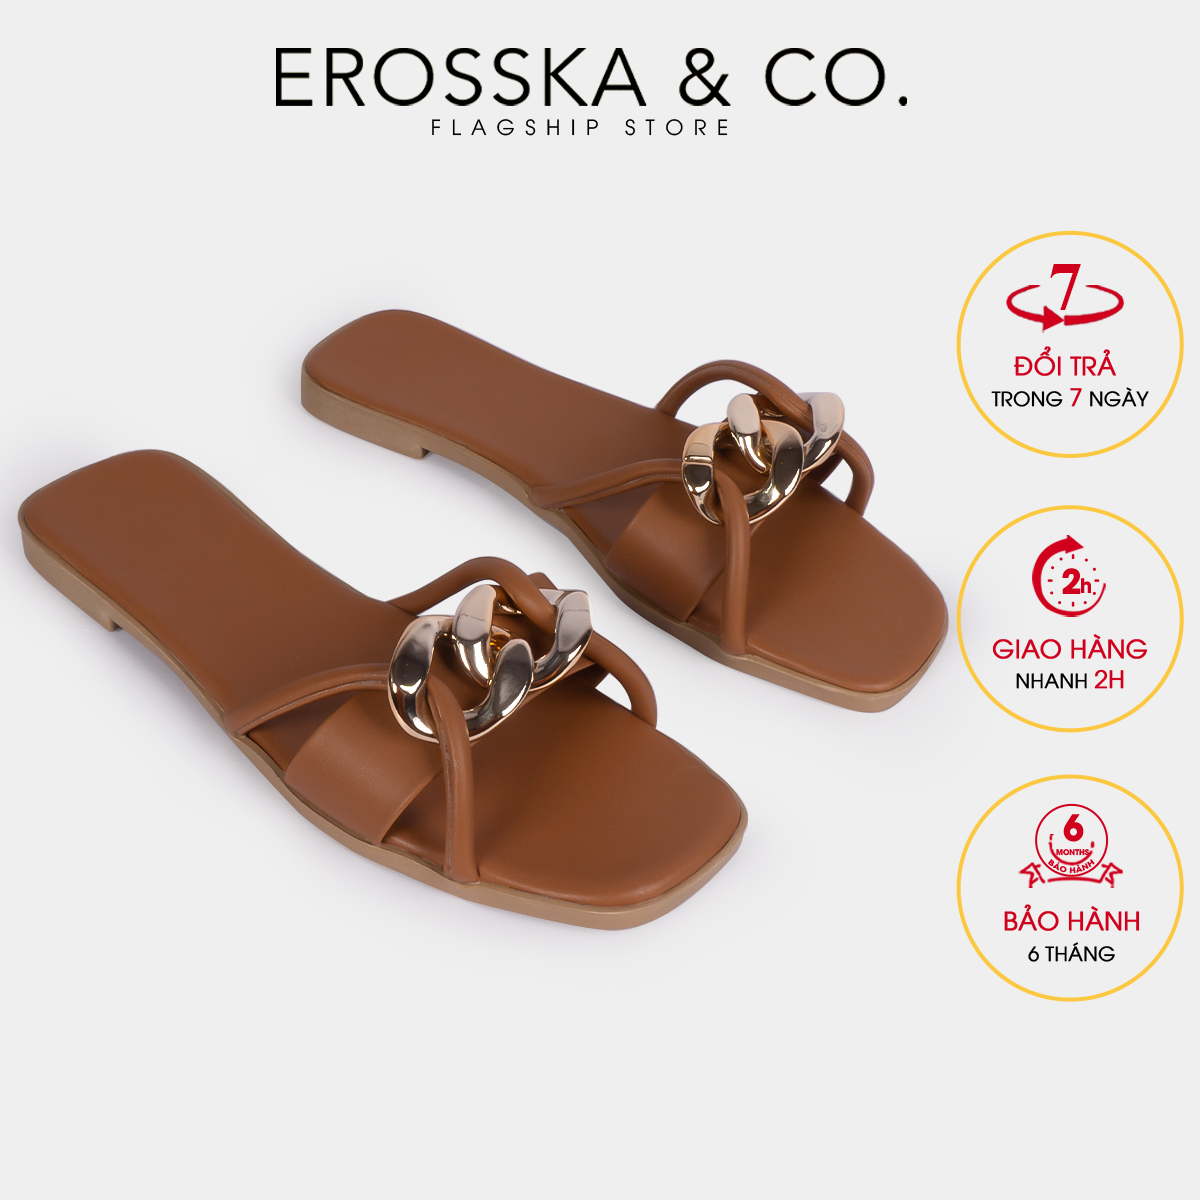 Erosska - Dép quai xích thời trang Erosska 2022 phối dây màu bò - DE040 thumbnail